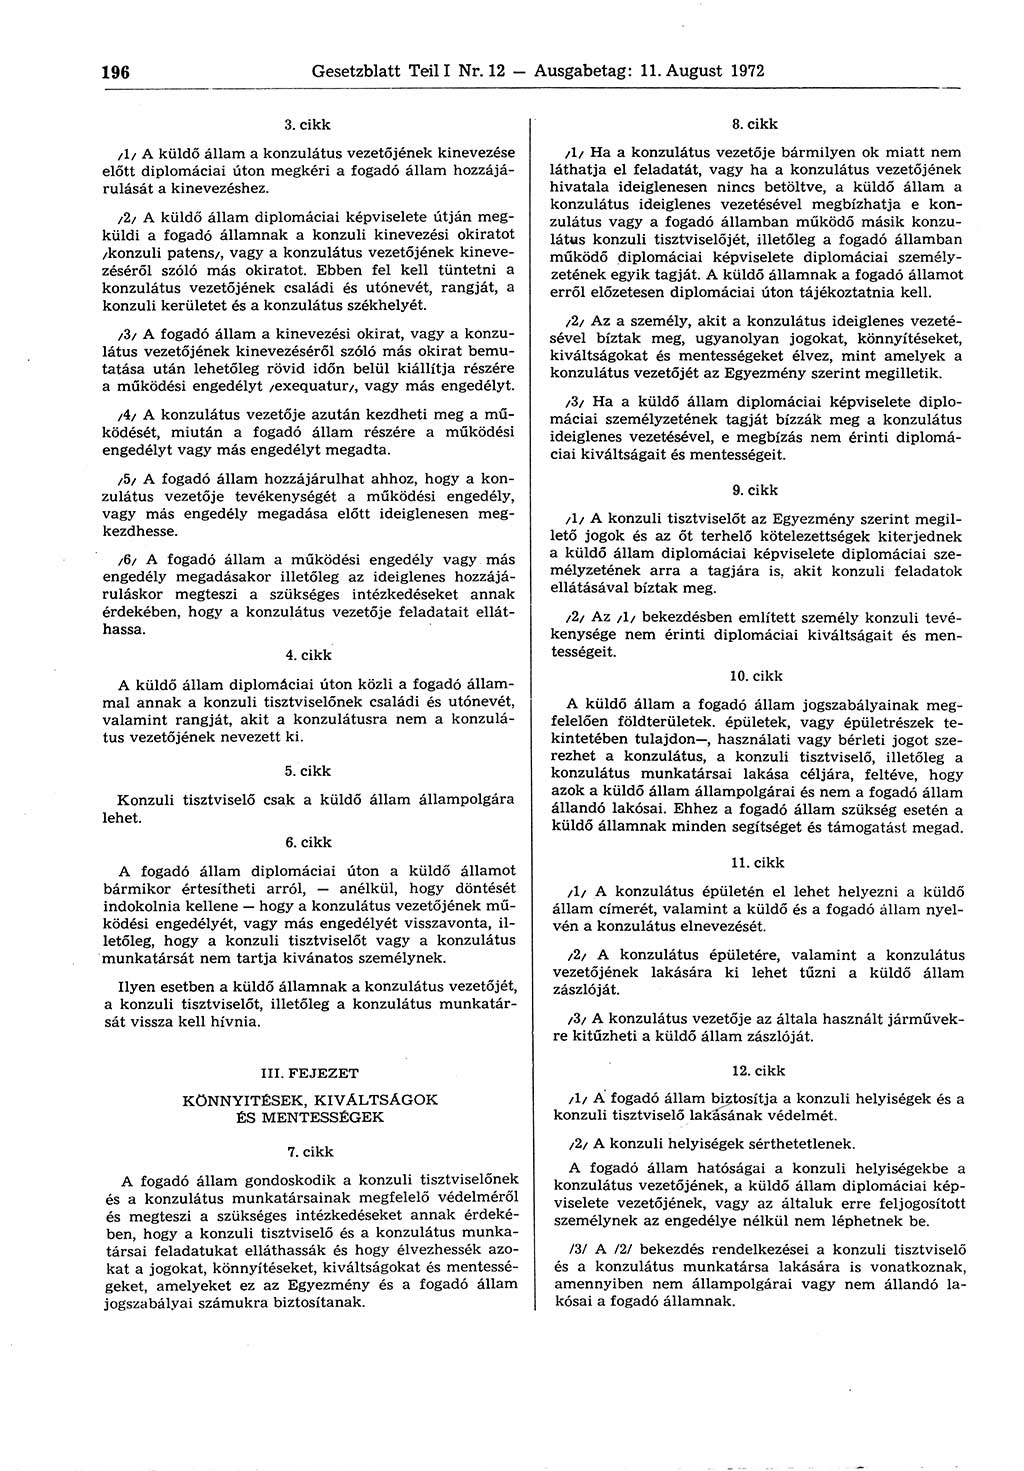 Gesetzblatt (GBl.) der Deutschen Demokratischen Republik (DDR) Teil Ⅰ 1972, Seite 196 (GBl. DDR Ⅰ 1972, S. 196)